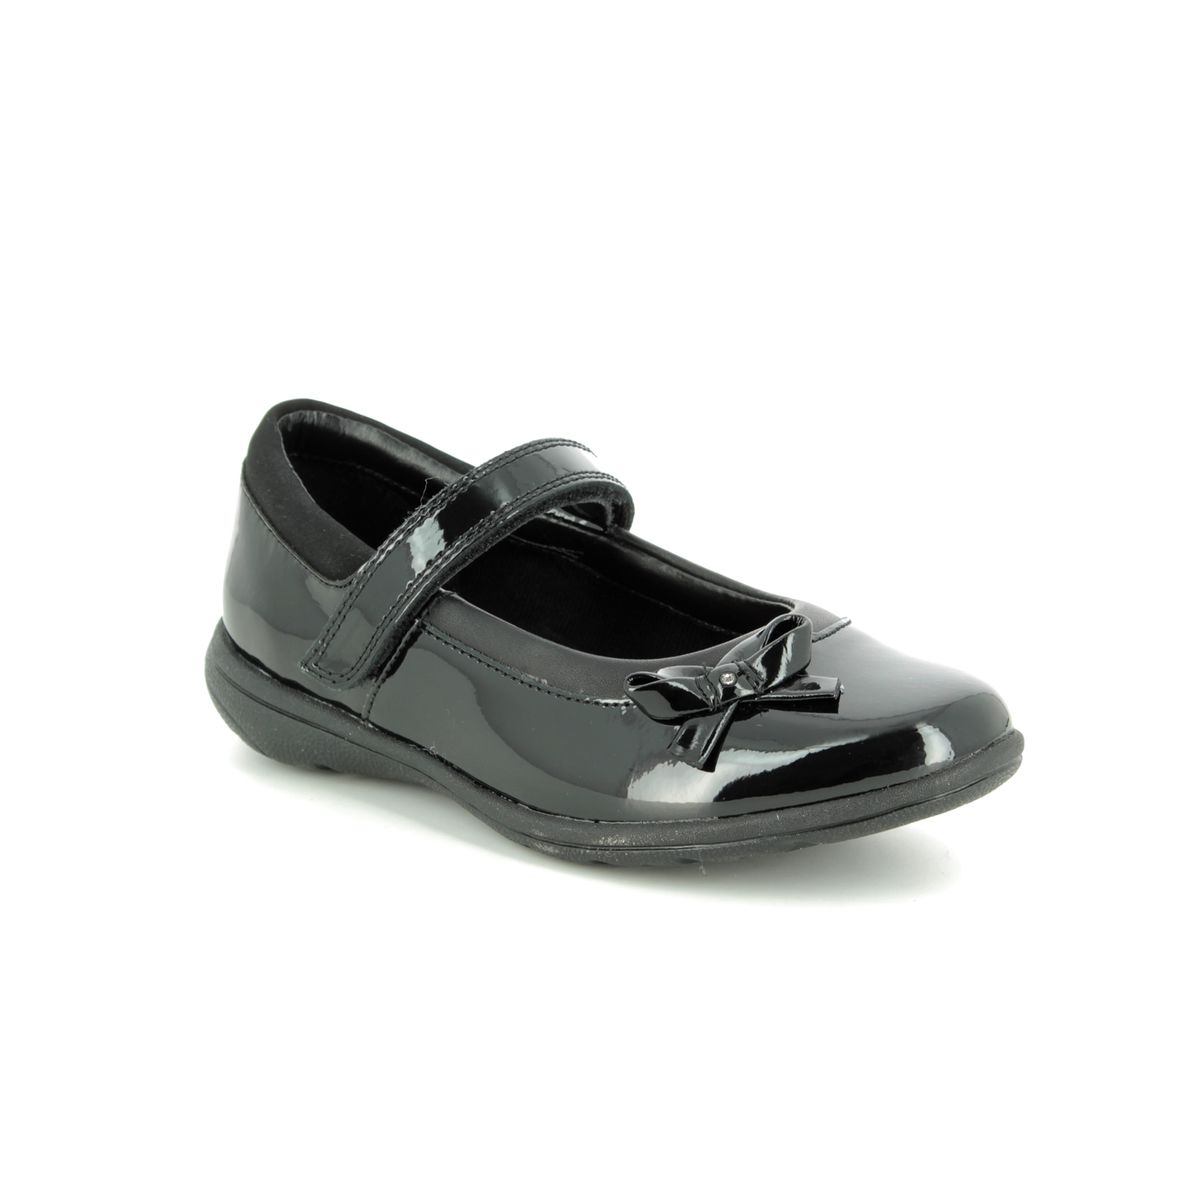 clarks black patent school shoes